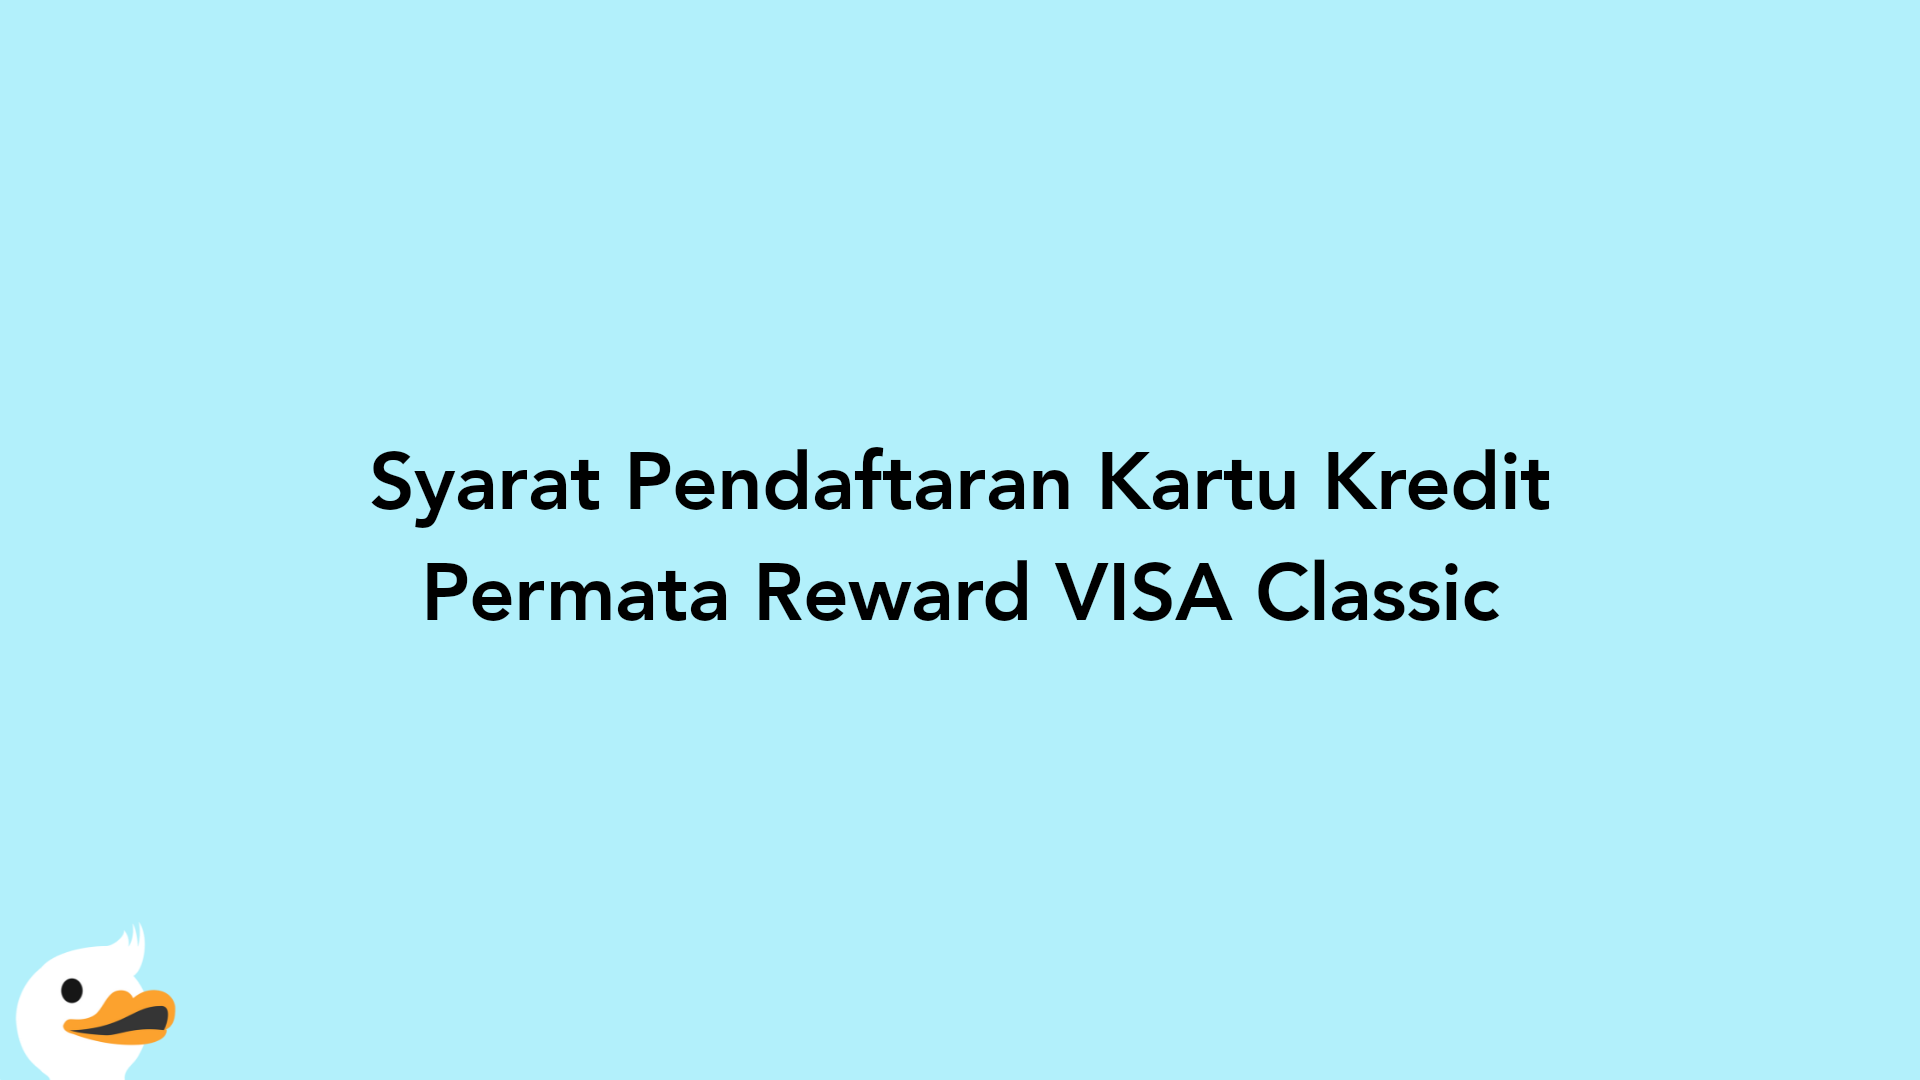 Syarat Pendaftaran Kartu Kredit Permata Reward VISA Classic